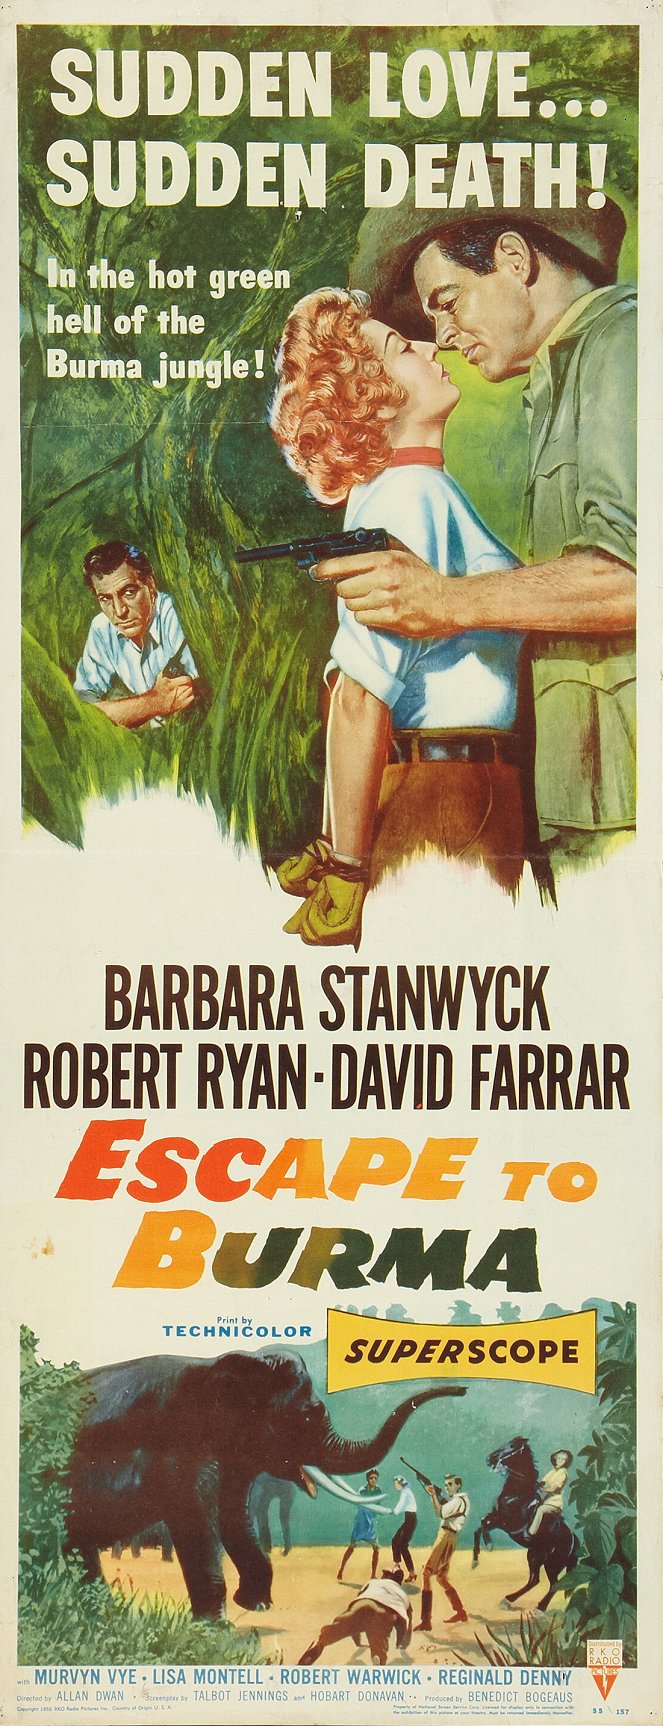 Escape to Burma - Cartazes